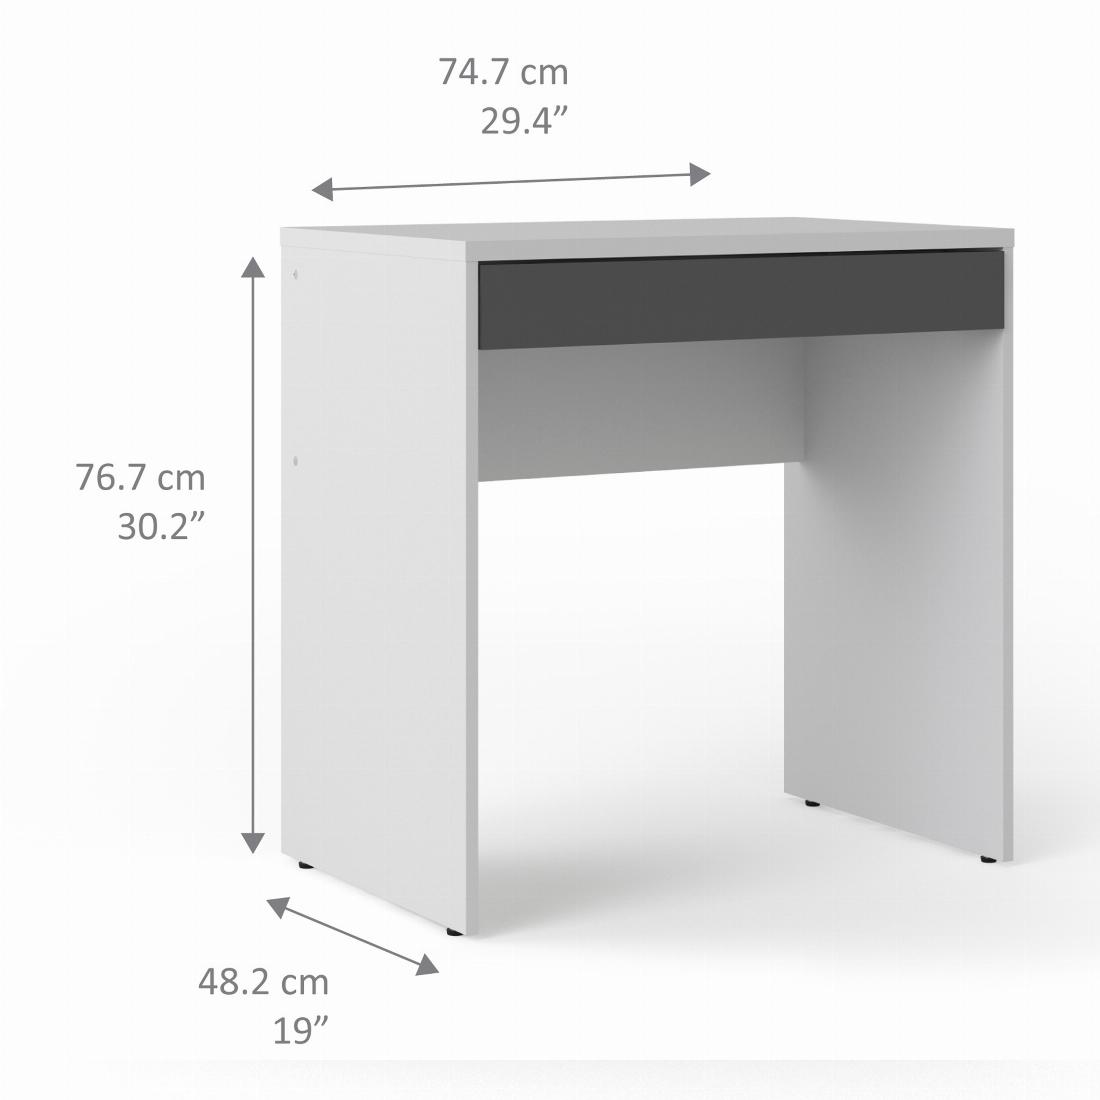 Function Plus Desk White Grey White Grey